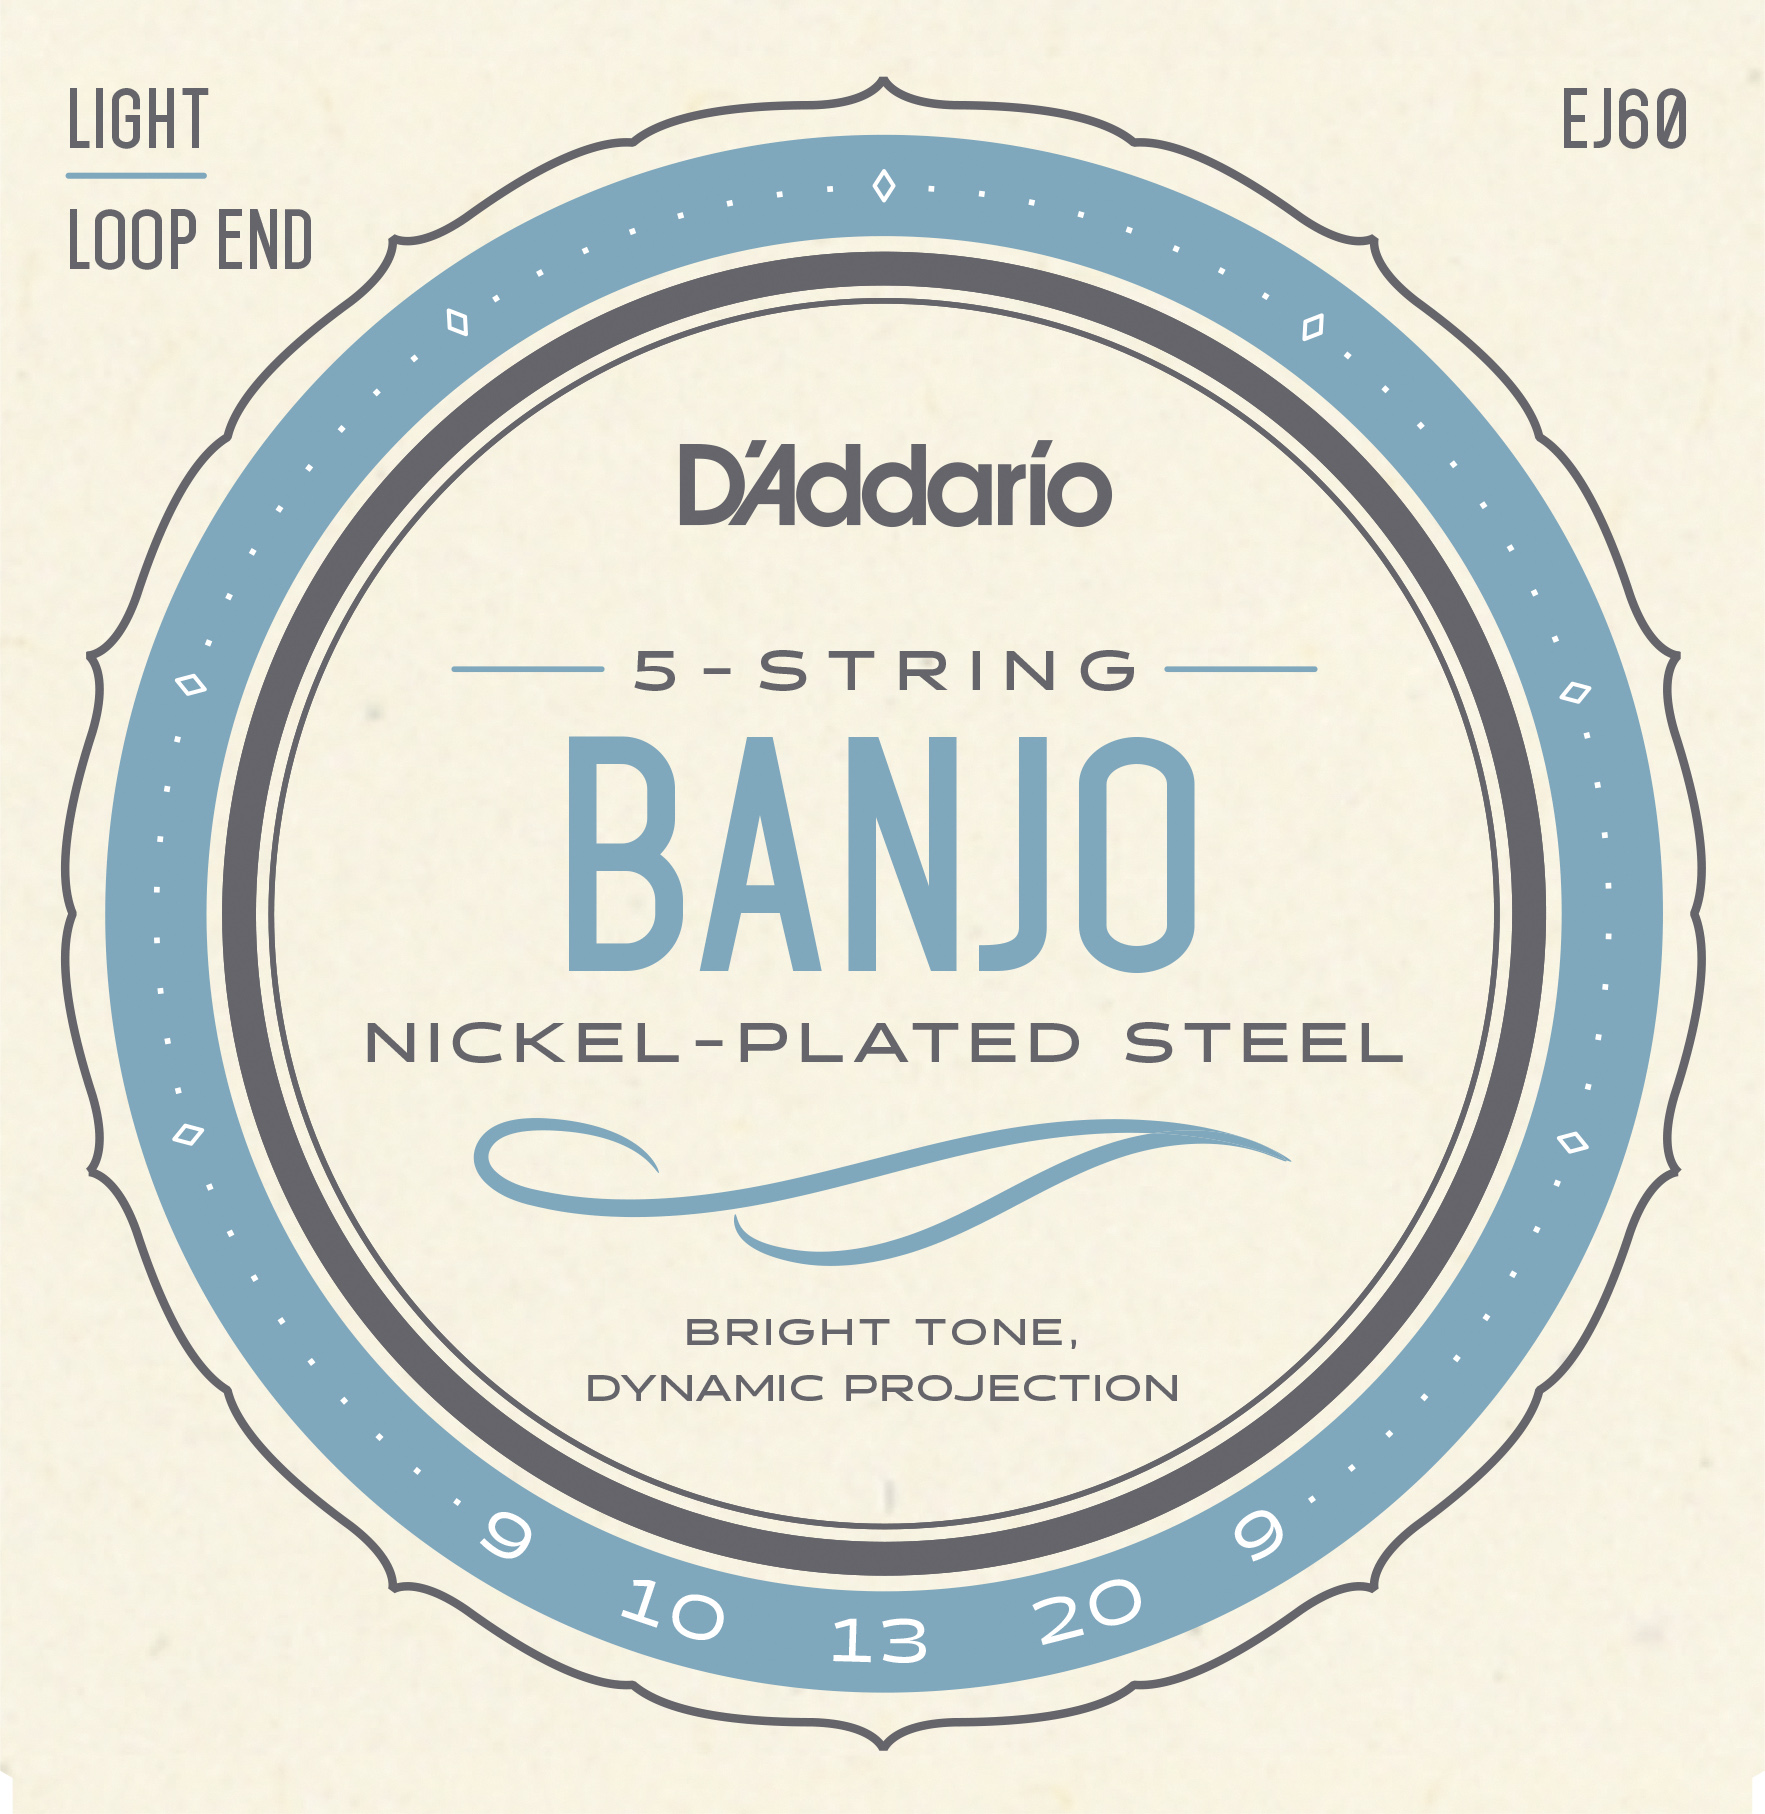 EJ60 Banjo 5-String Light